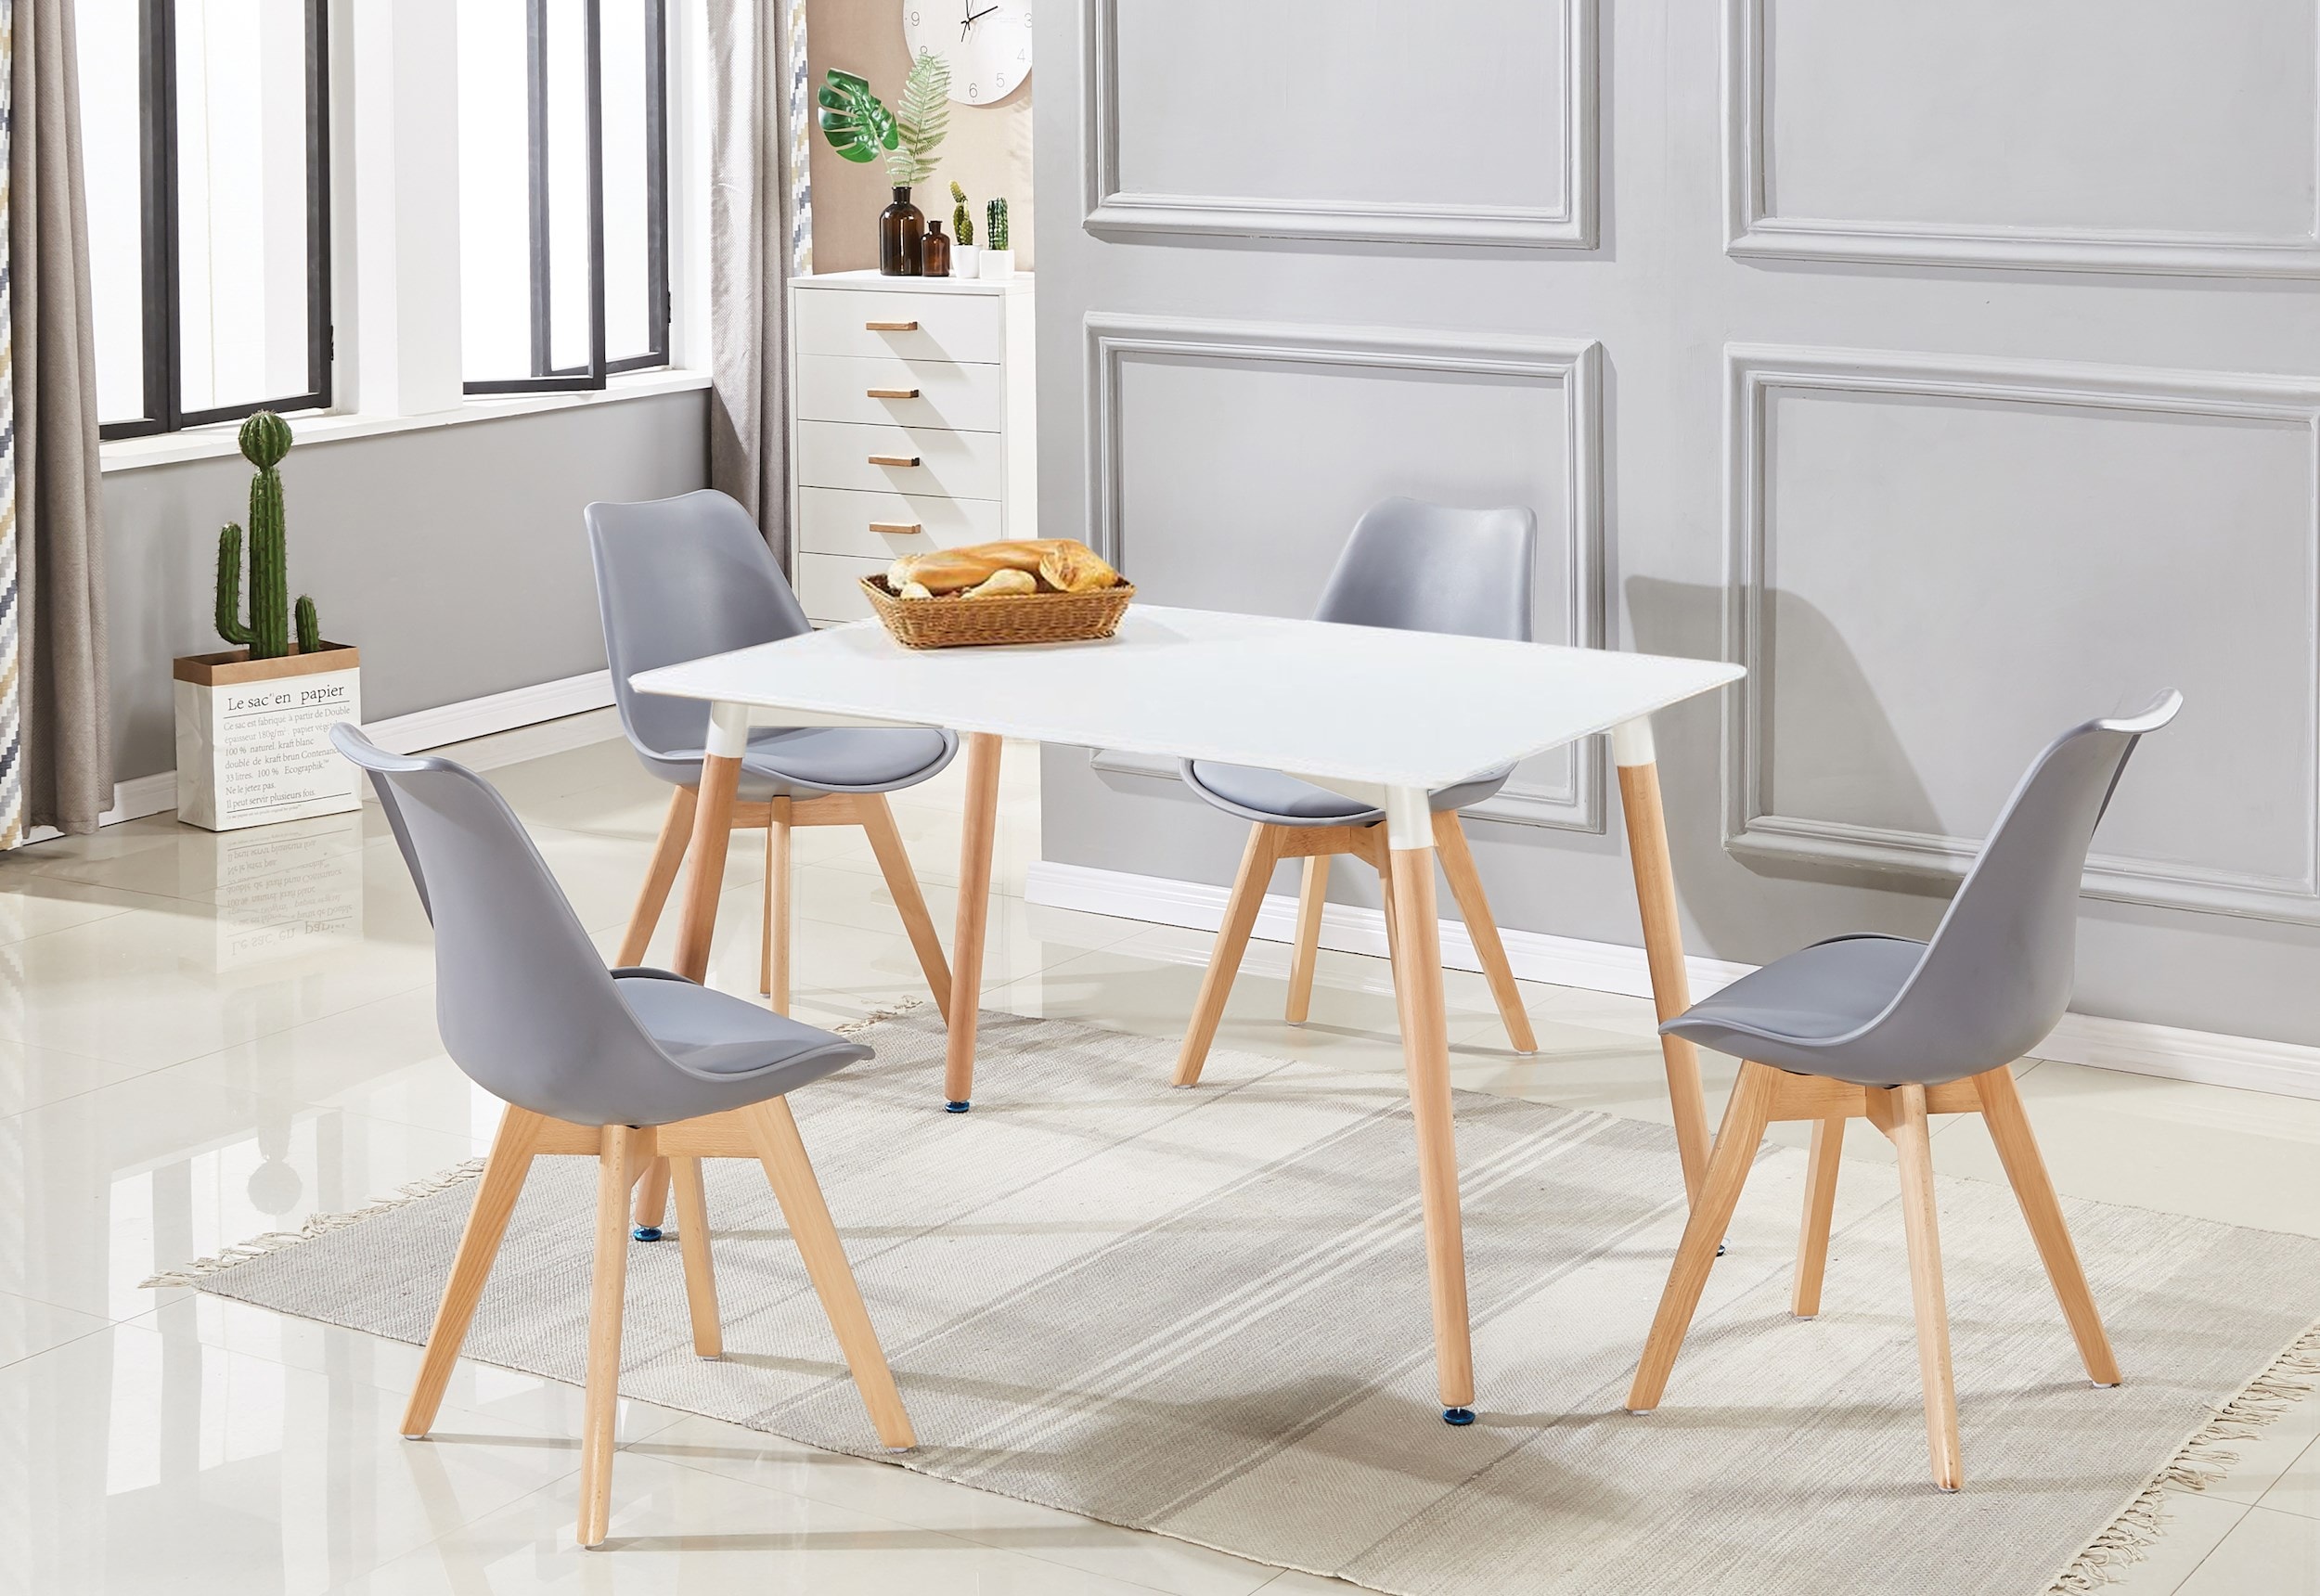 Salle à manger, table et 4 chaises, grise et blanche